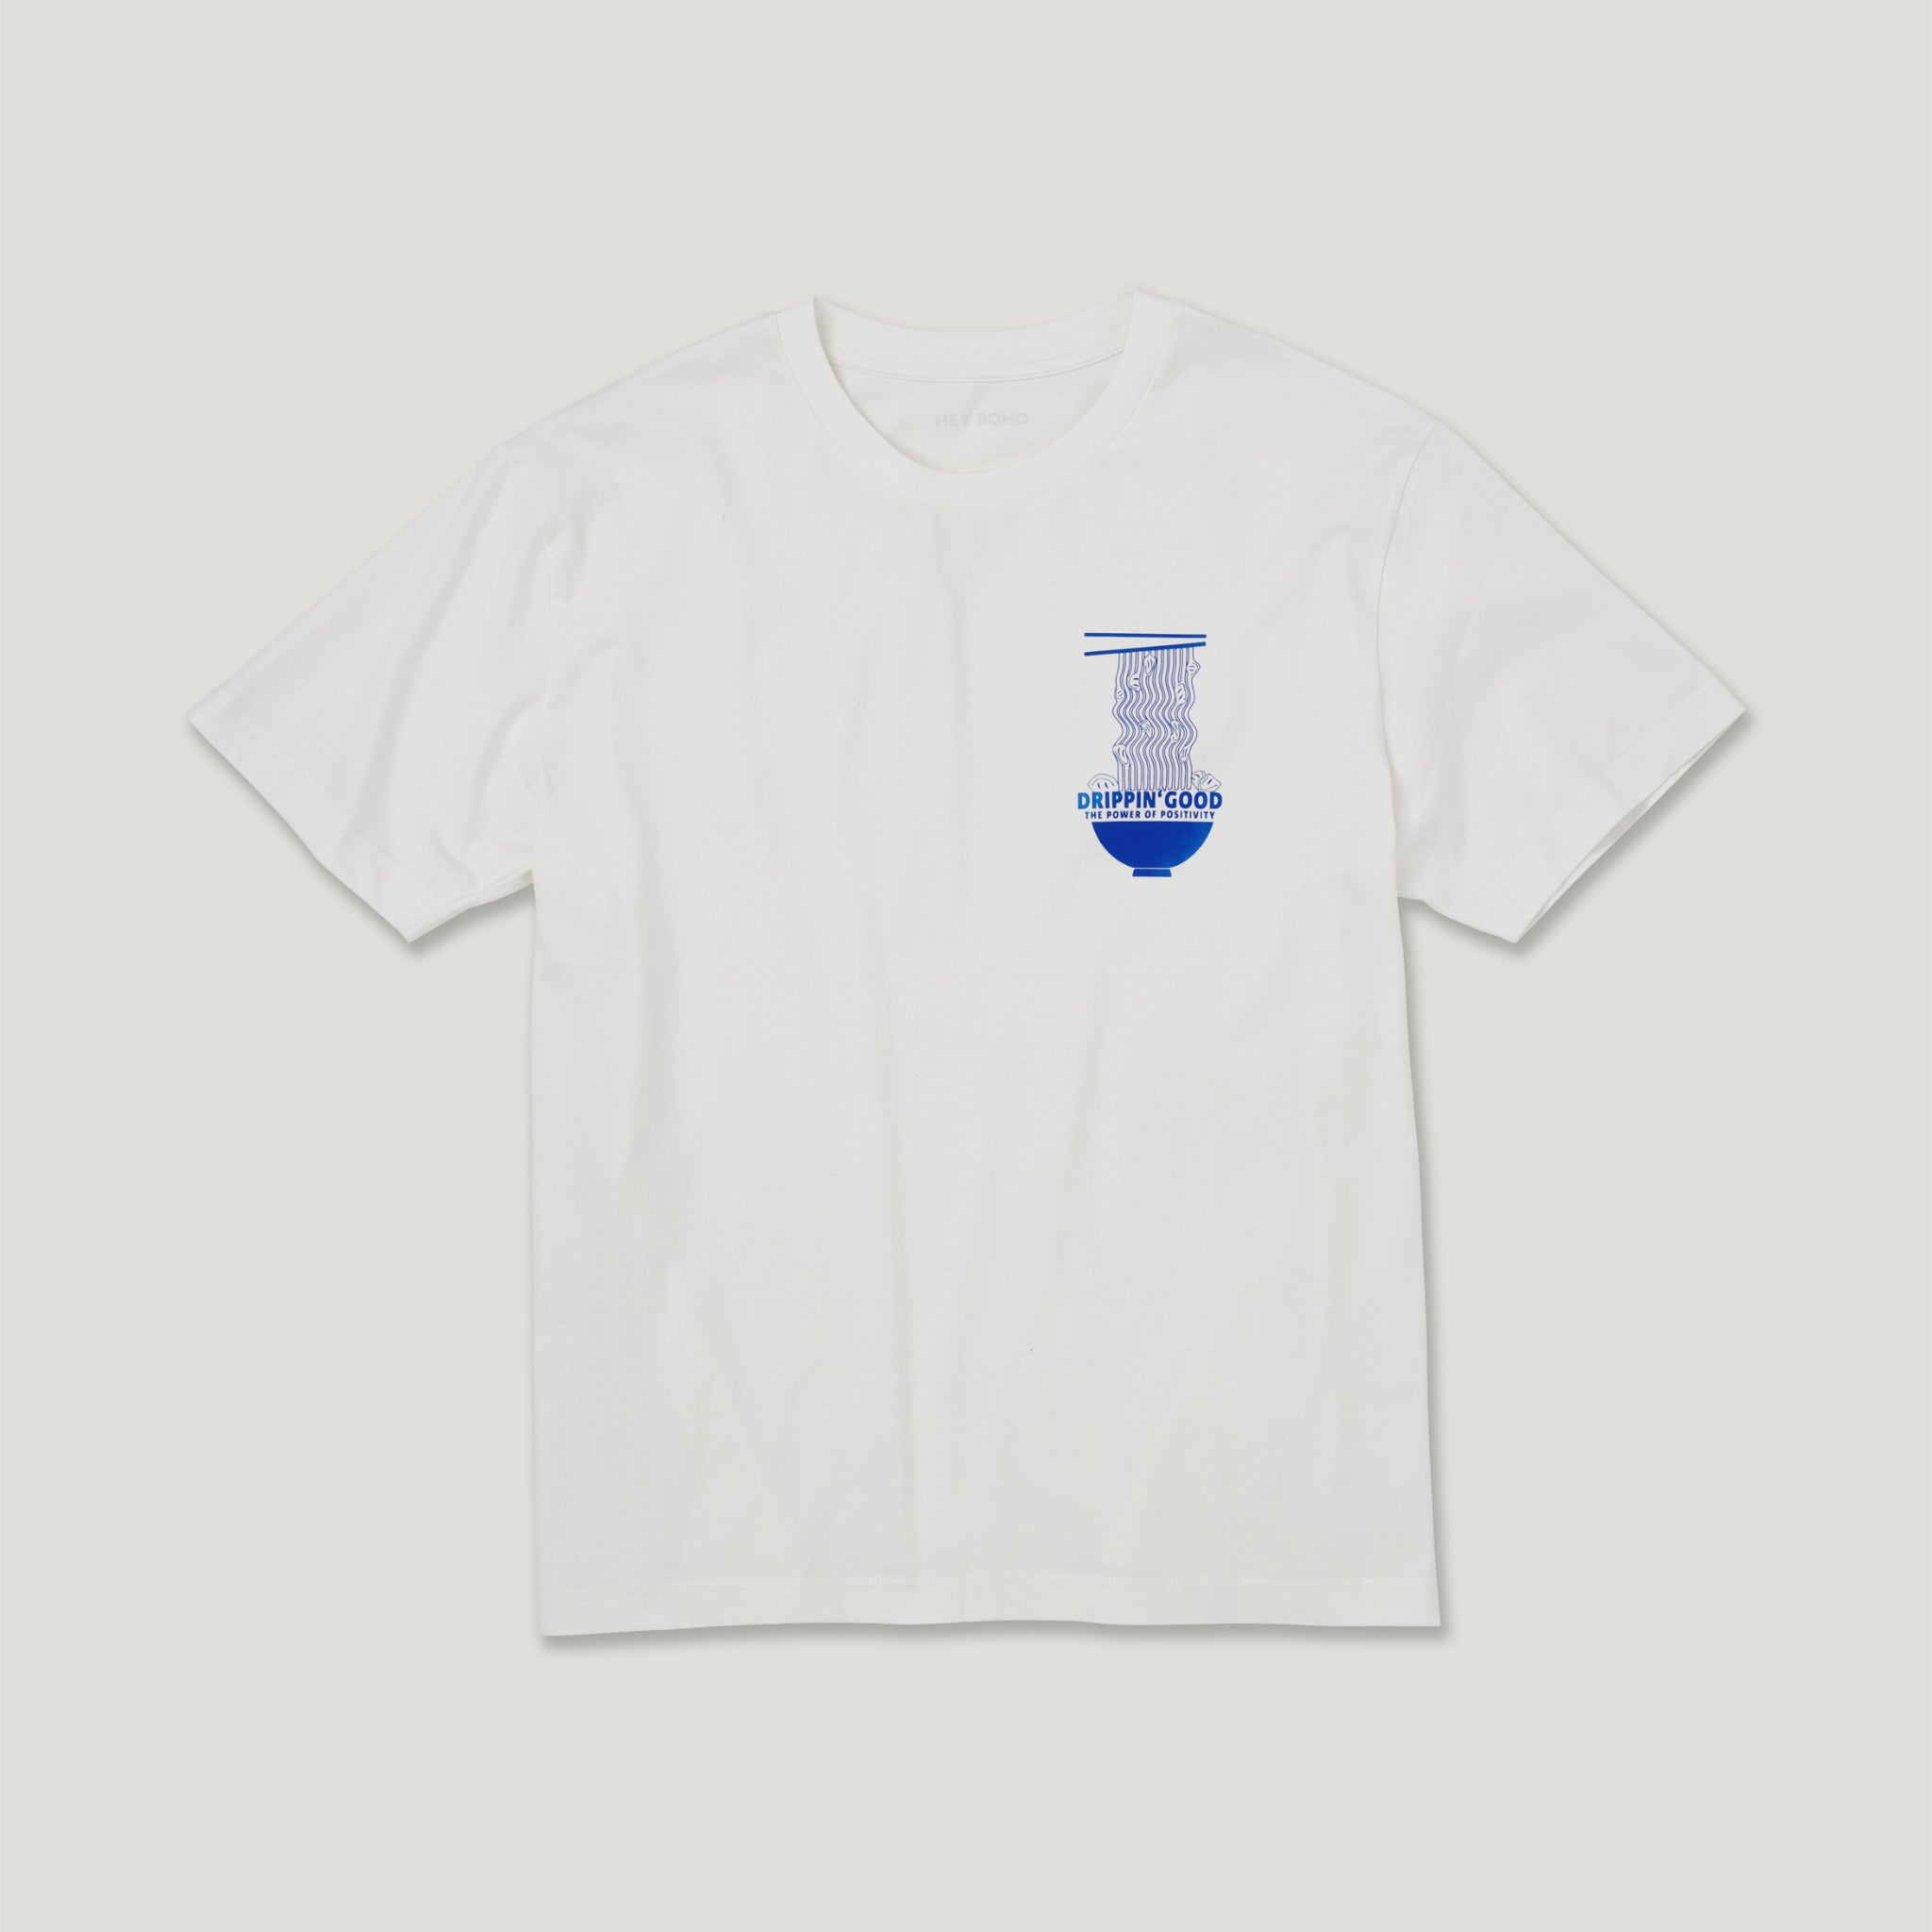 hey soho T-Shirt "Drippin Good"